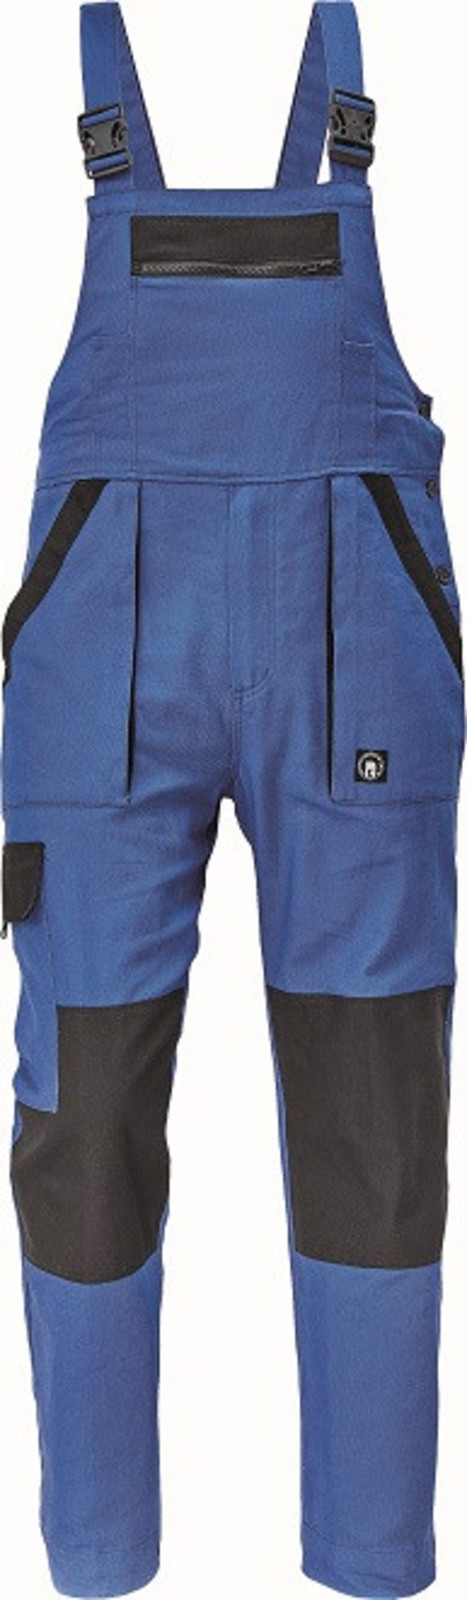 Bavlnené montérky na traky Cerva Max Neo pánske - veľkosť: 52, farba: modrá